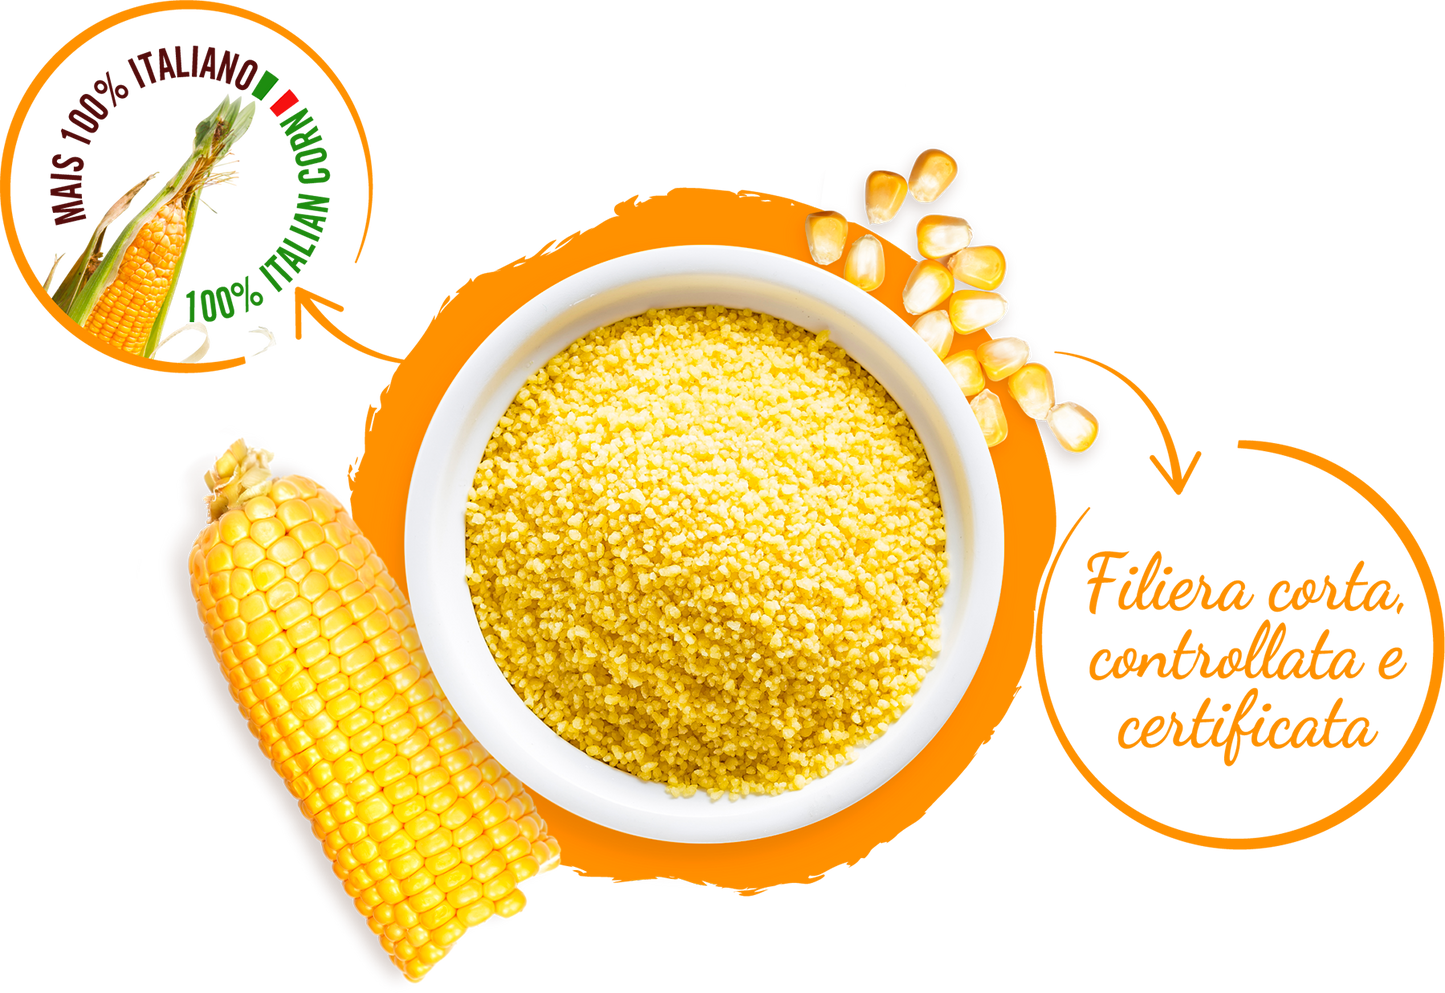 Vitabella cous cous di mais senza glutine 375g Nicoli - Vitabella Food